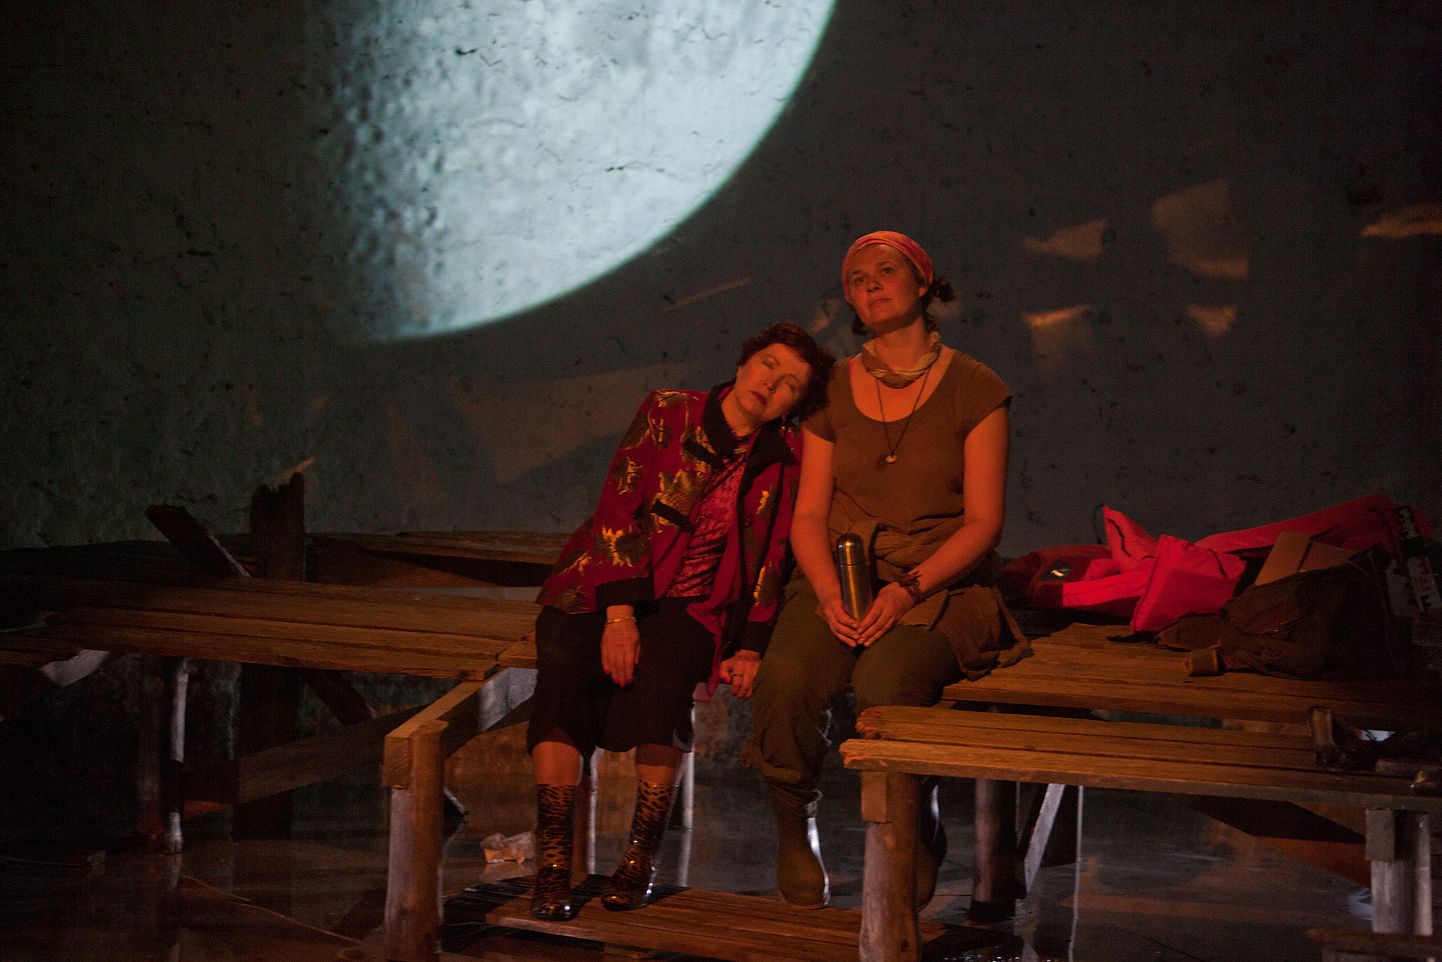 NAISED OMAVAHEL: Kersti Kreismann (vasakul) ja Piret Rauk lavastuses "Yksine".